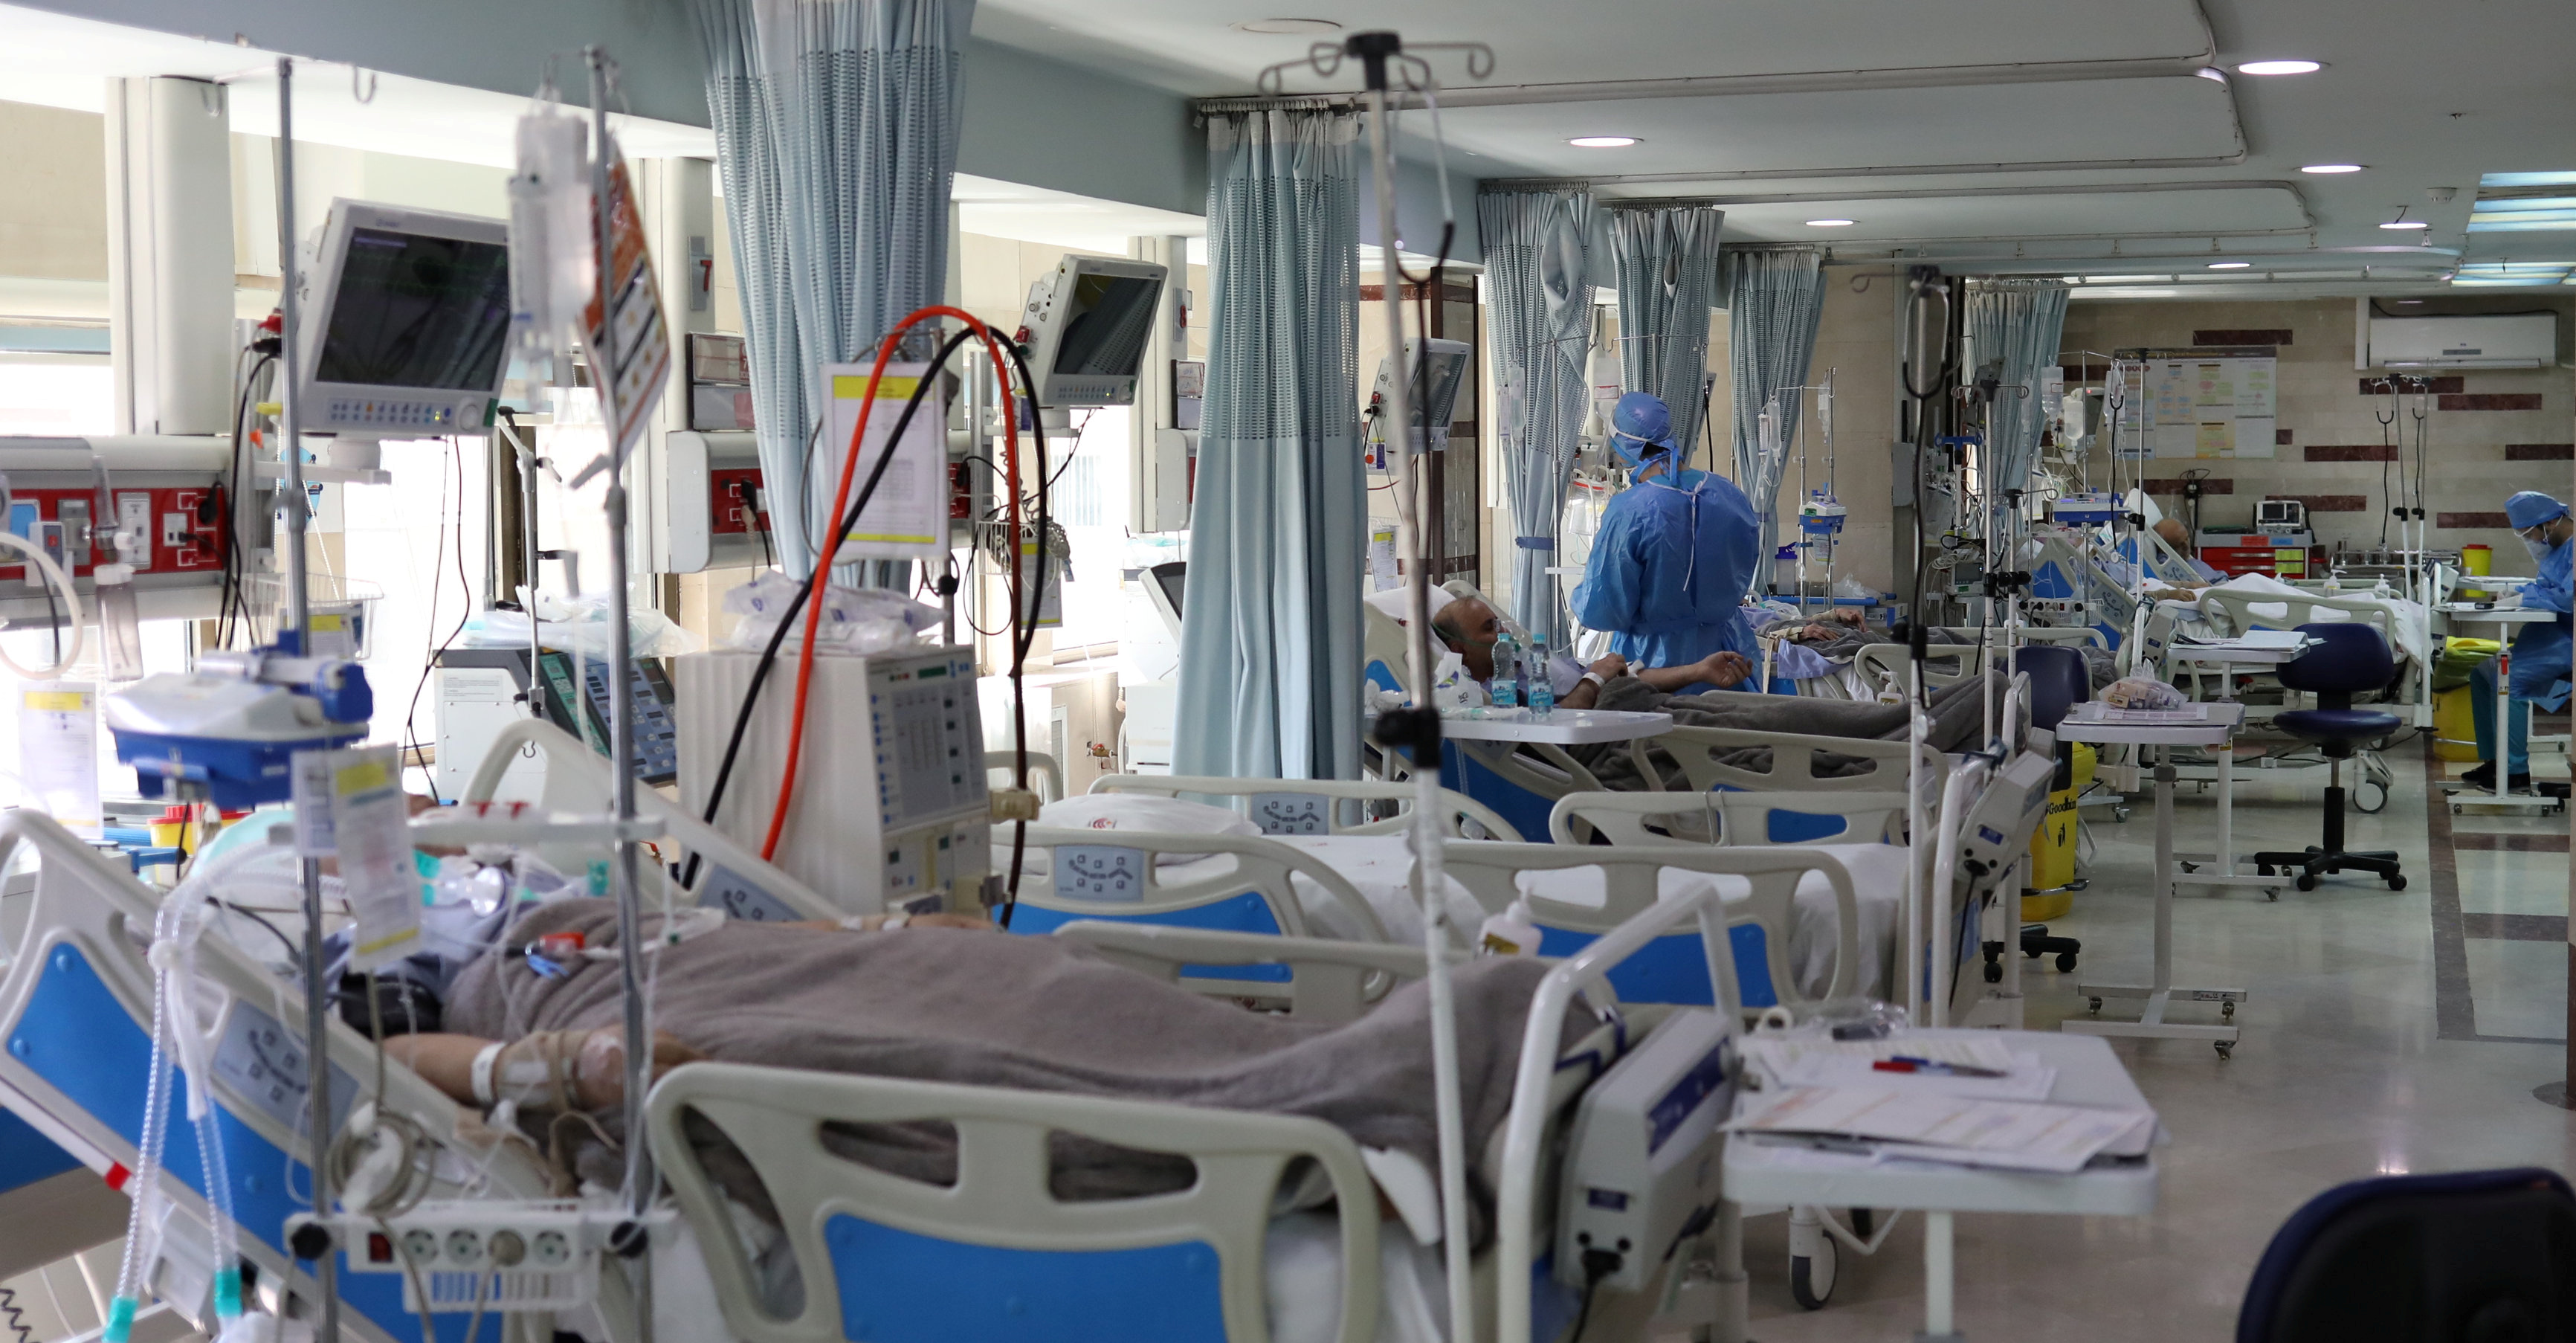 Al igual que hace un siglo, se crearon áreas especiales en los hospitales para separar a los pacientes de COVID-19. (West Asia News Agency/Ali Khara via REUTERS)